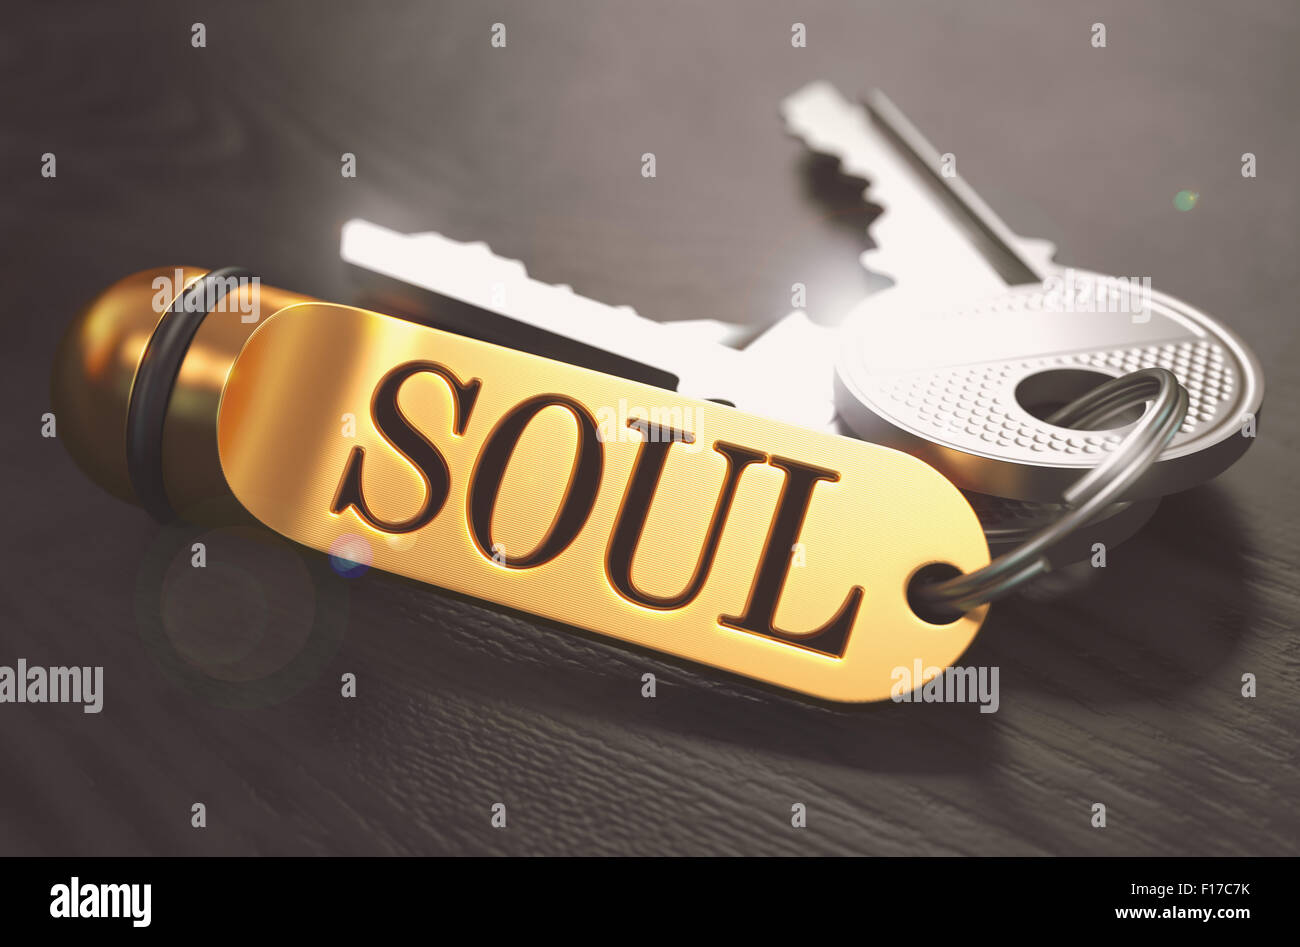 Schlüssel und goldenen Schlüsselanhänger mit dem Wort Seele über schwarzer Holztisch mit Unschärfe-Effekt. Getönten Image. Stockfoto